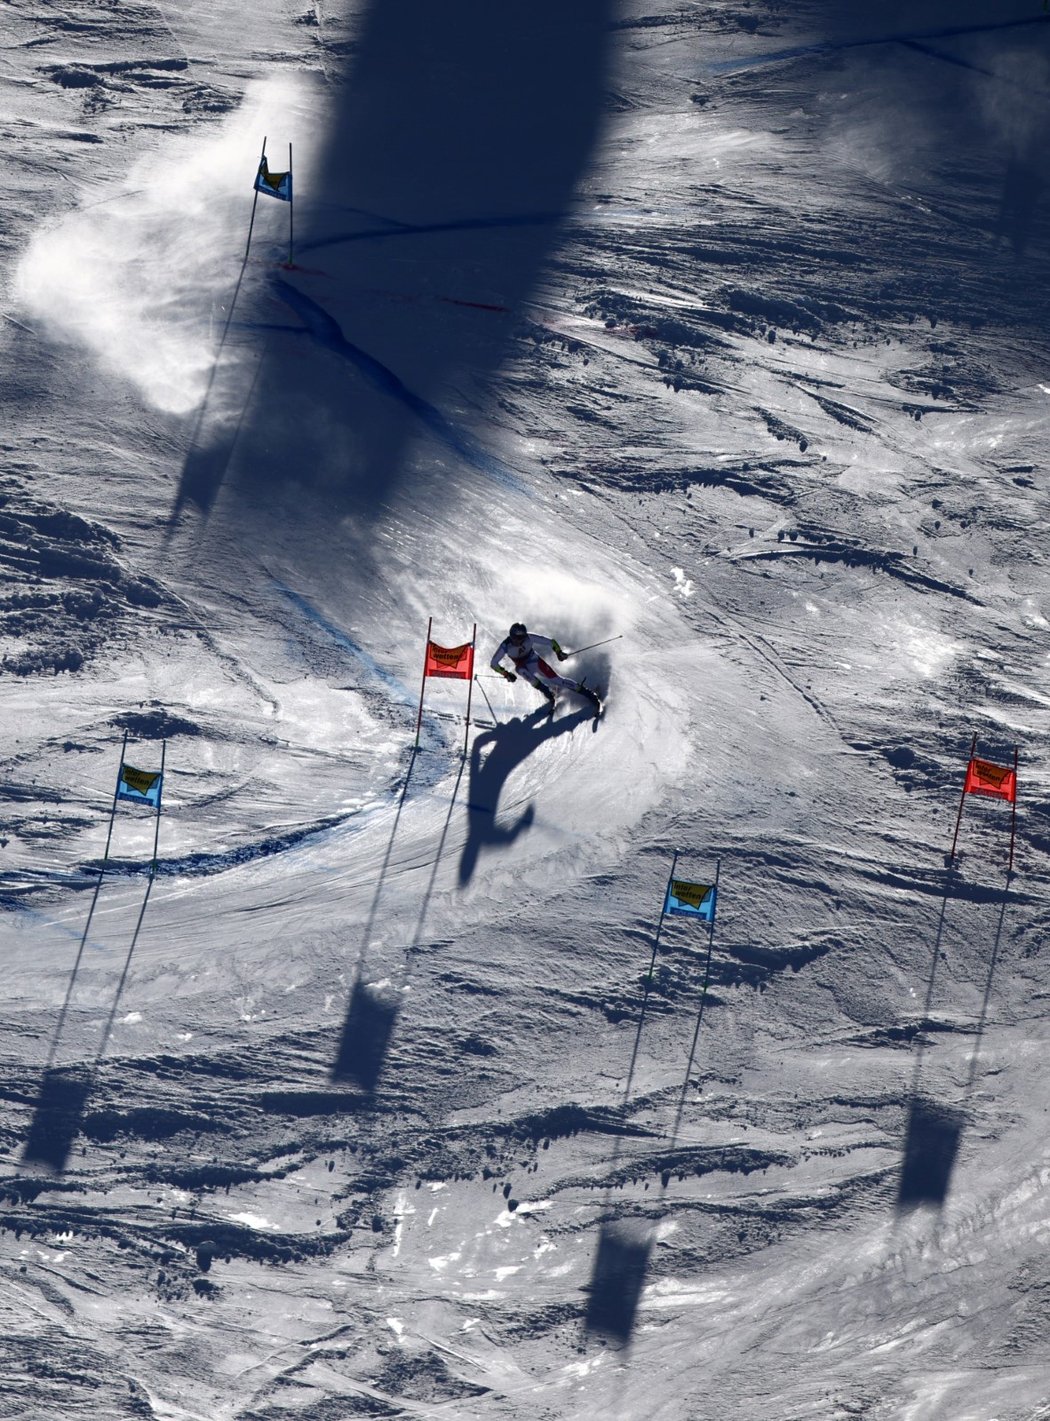 Marco Odermatt ovládl první závod Světového poháru, obří slalom v Söldenu